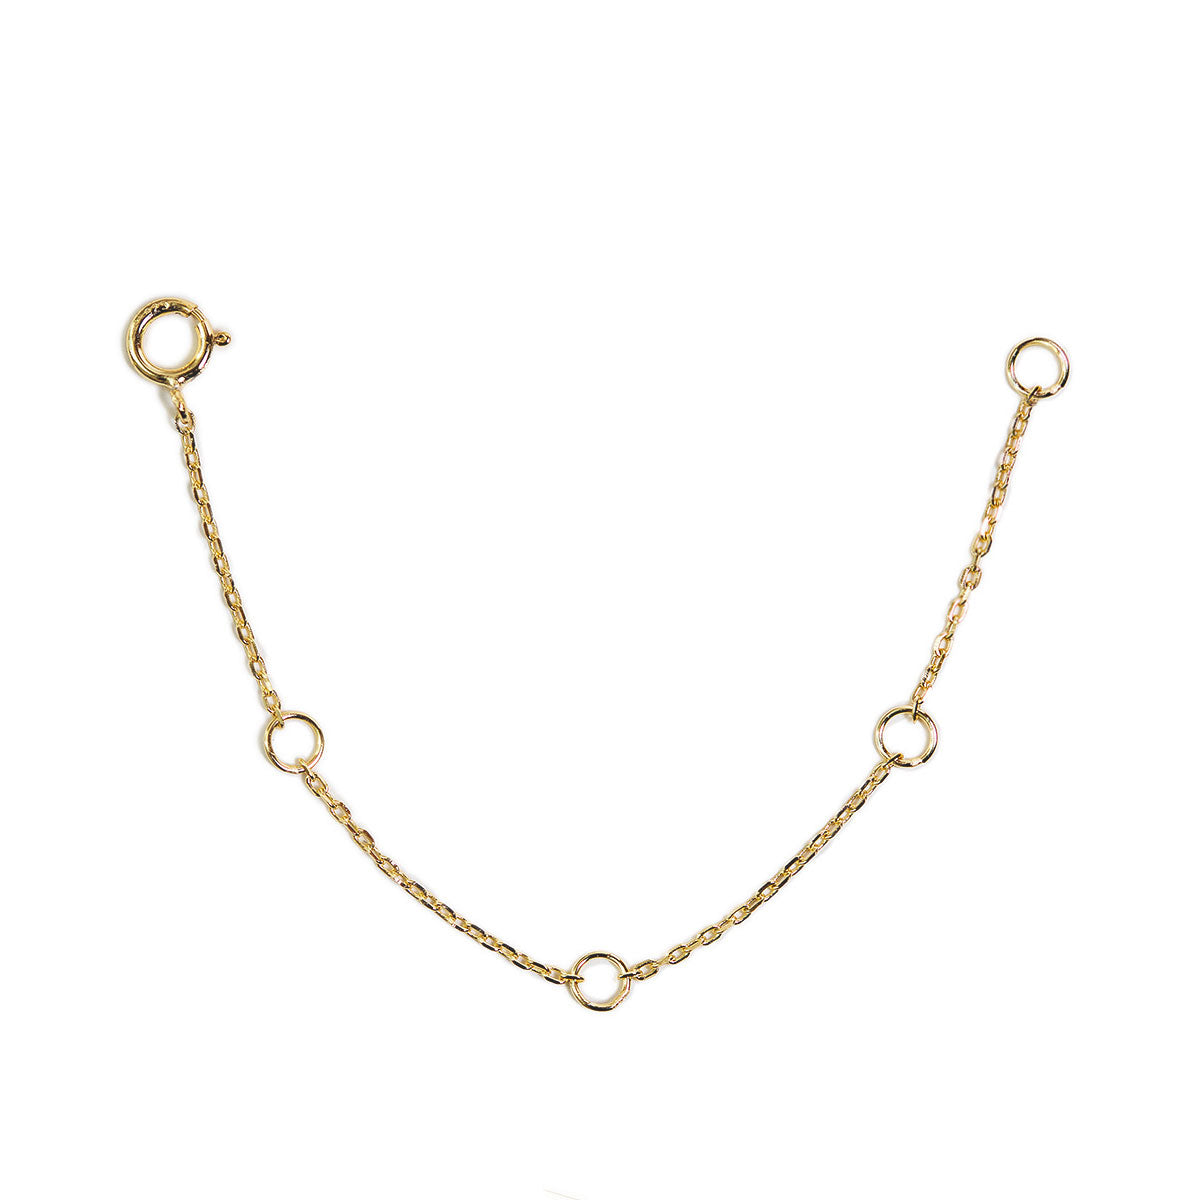 14k Solid Gold Extender For Necklace or Bracelet,Extension Link